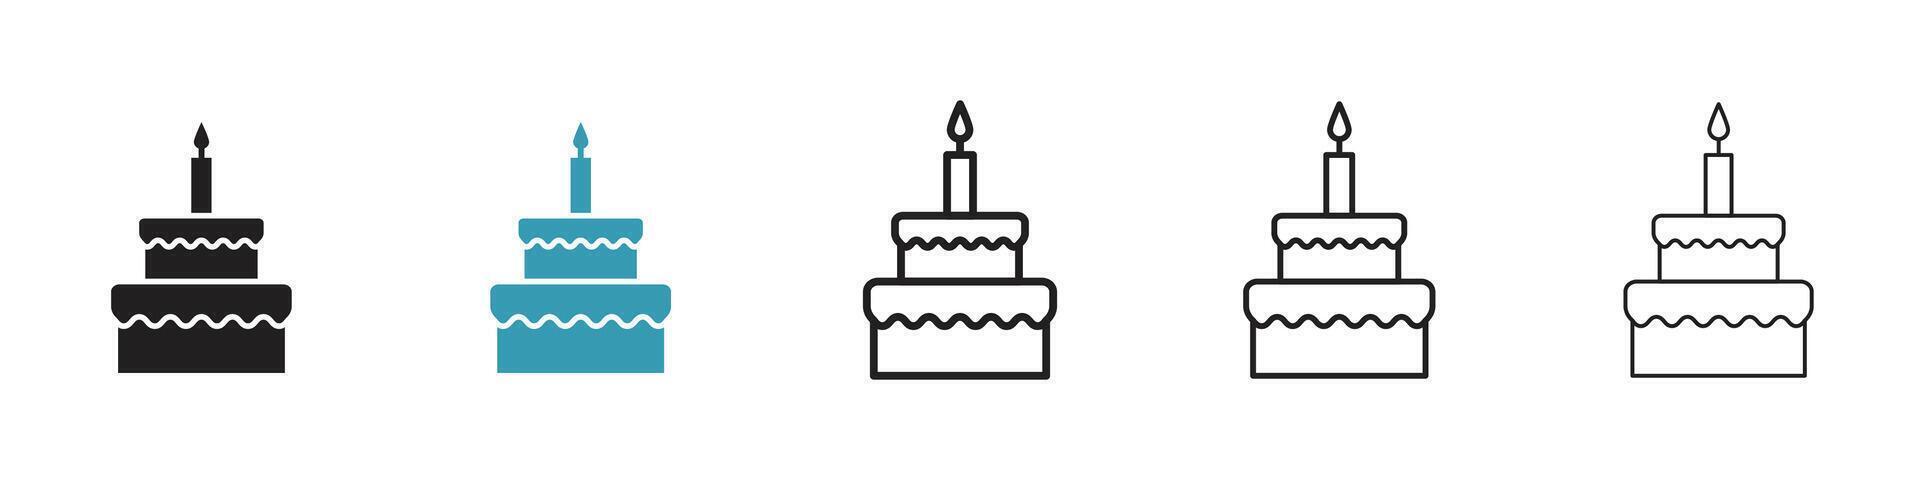 icona della torta di compleanno vettore